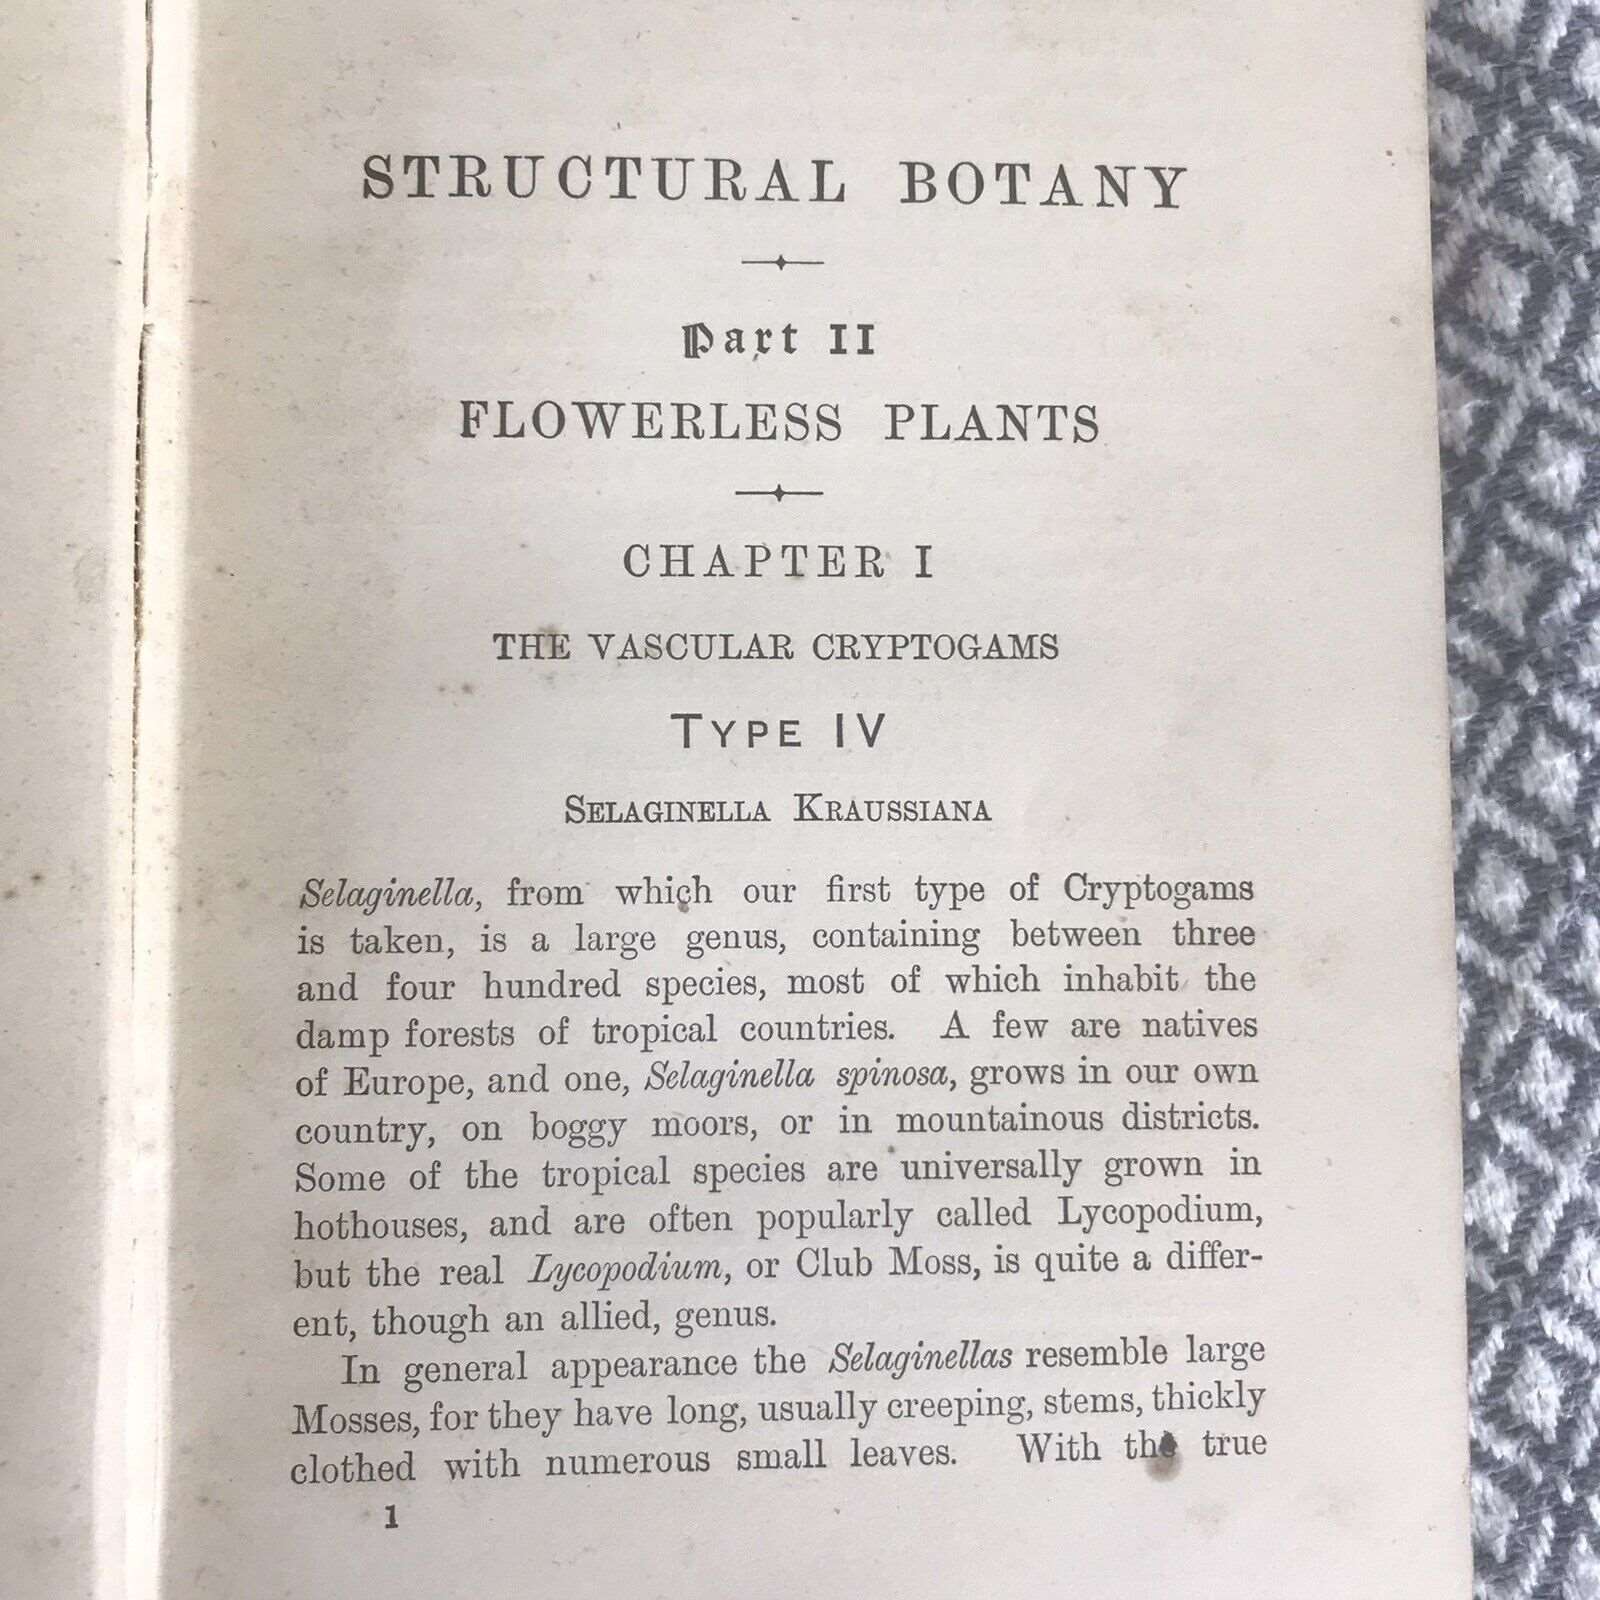 1909 & 1912 Structured Botany Flowering / Flowerless Plants - D. H. Scott (A&C ) Honeyburn Books (UK)